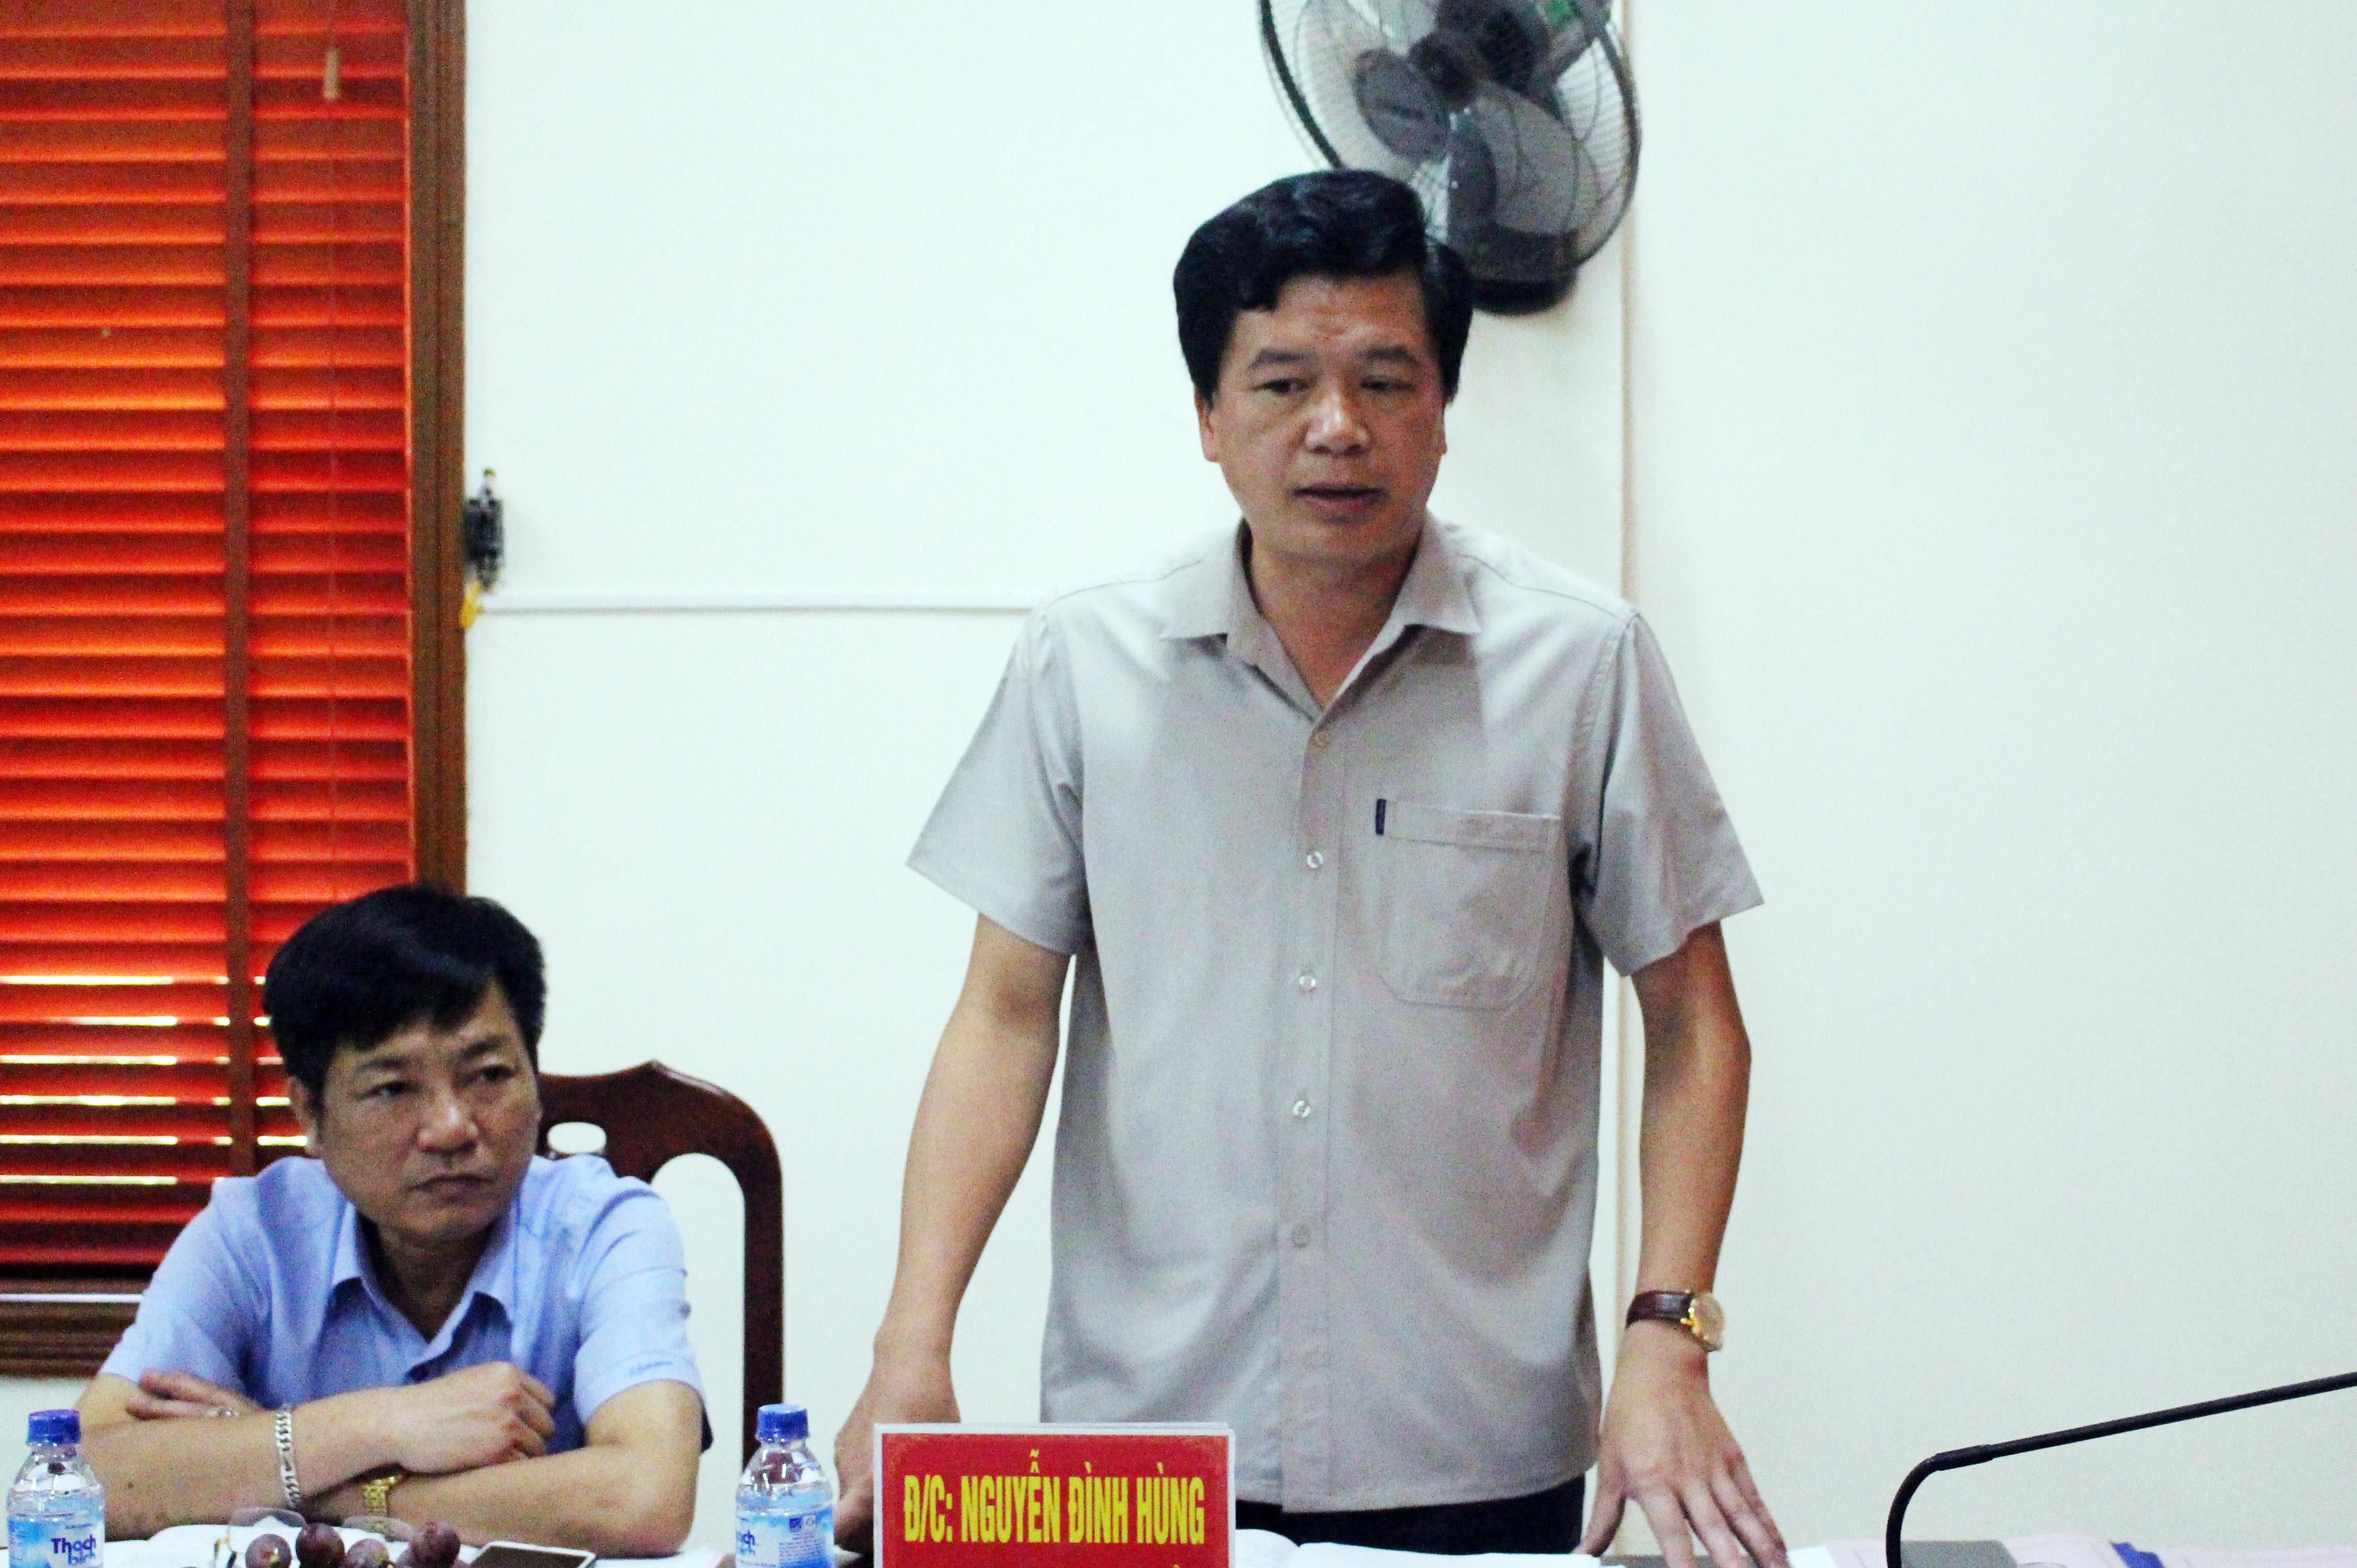 Đồng chí Nguyễn Đình Hùng - Bí thư huyện ủy Con Cuông báo cáo kết quả thực hiện Nghị quyết 26 gắn với nghị quyết 18 của huyện trong thời gian qua. Ảnh: Minh Hạnh 